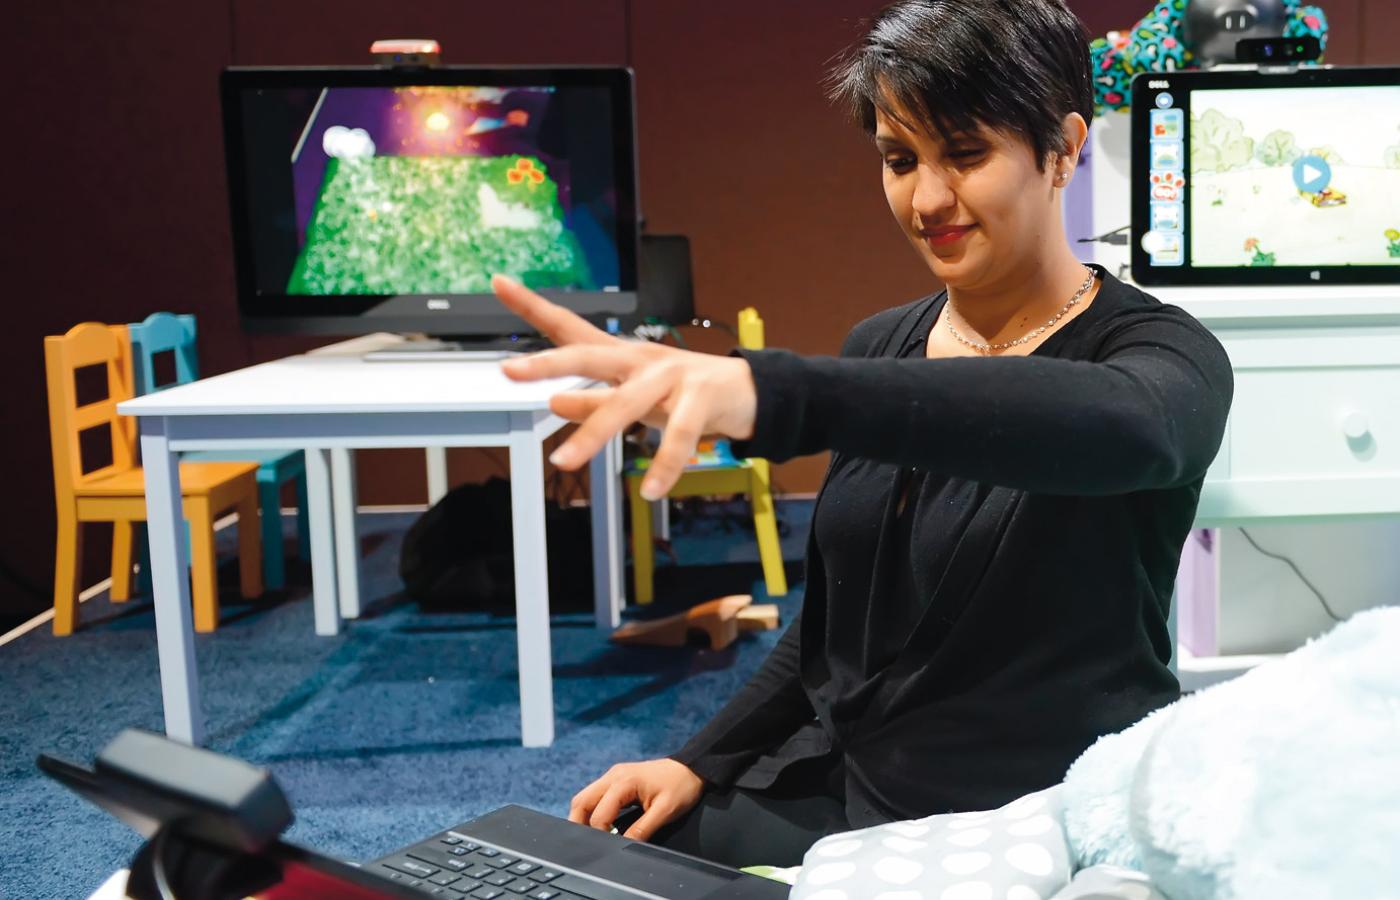 Pracowniczka Intela podczas pokazu sterowania gestem grą komputerową.